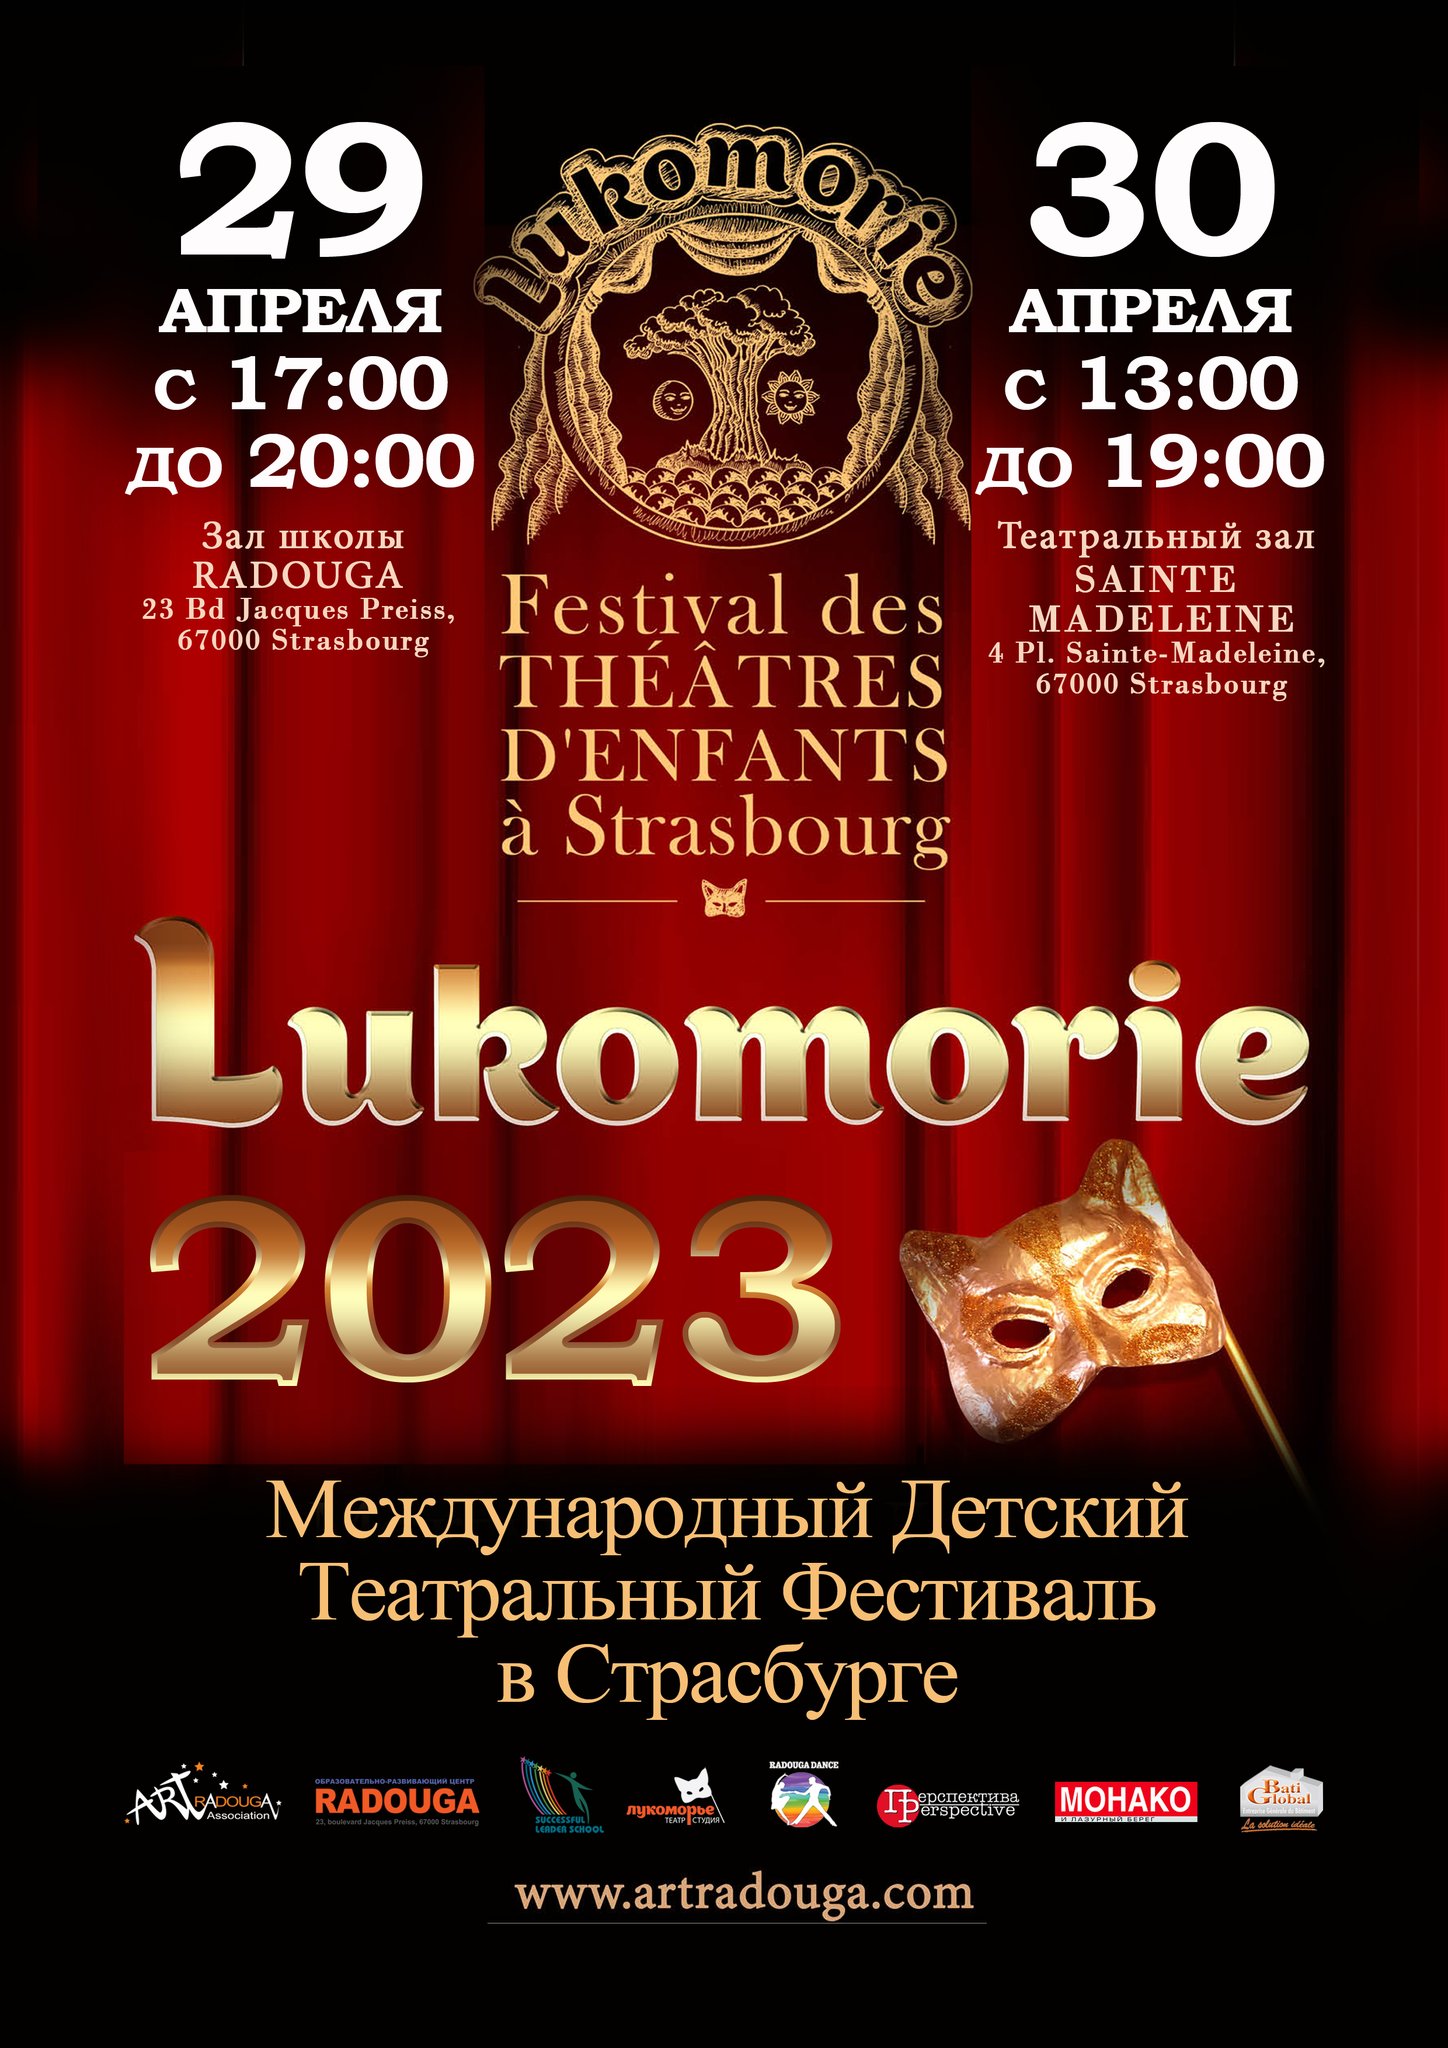 До 31 марта 2023 г. – прием заявок на участие во II Международном детском театральном фестивале «Лукоморье» в Страсбурге